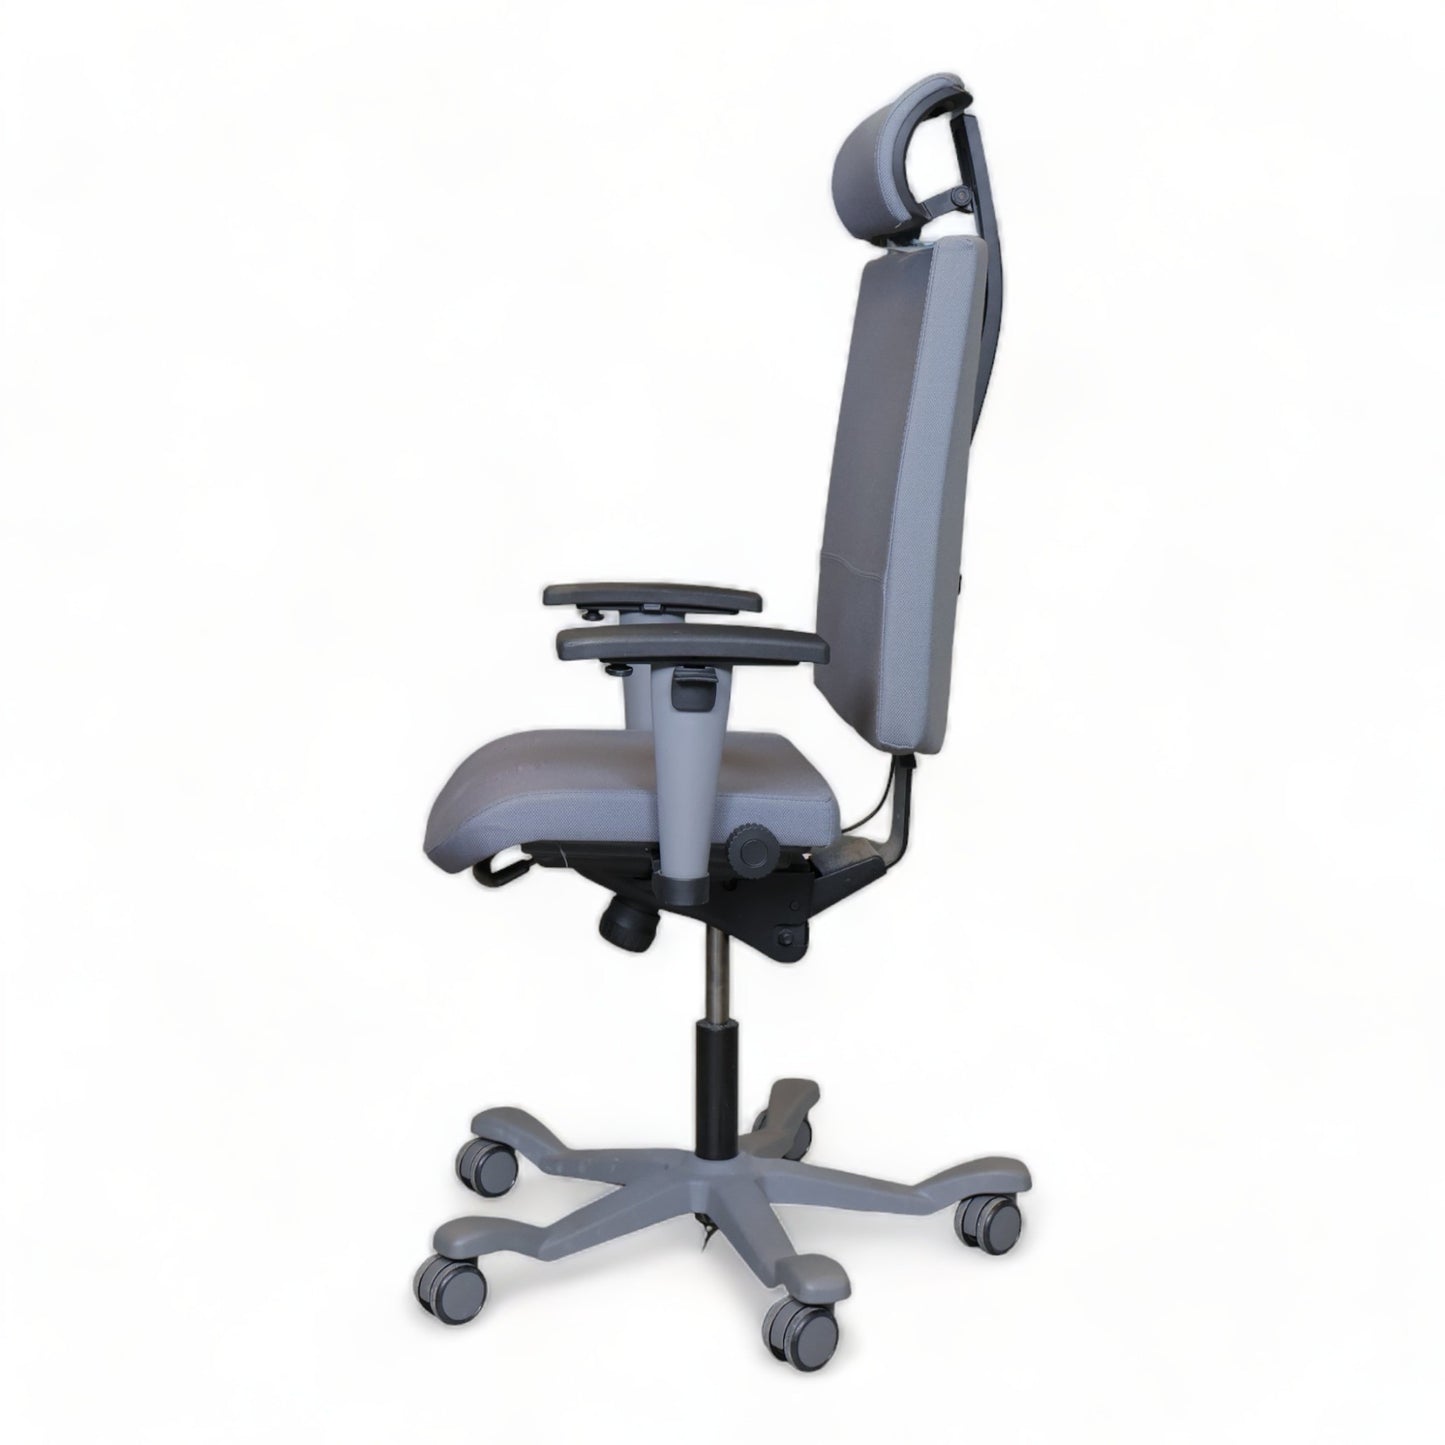 Nyrenset | ISKU kontorstol med nakkestøtte og justerbare armlener